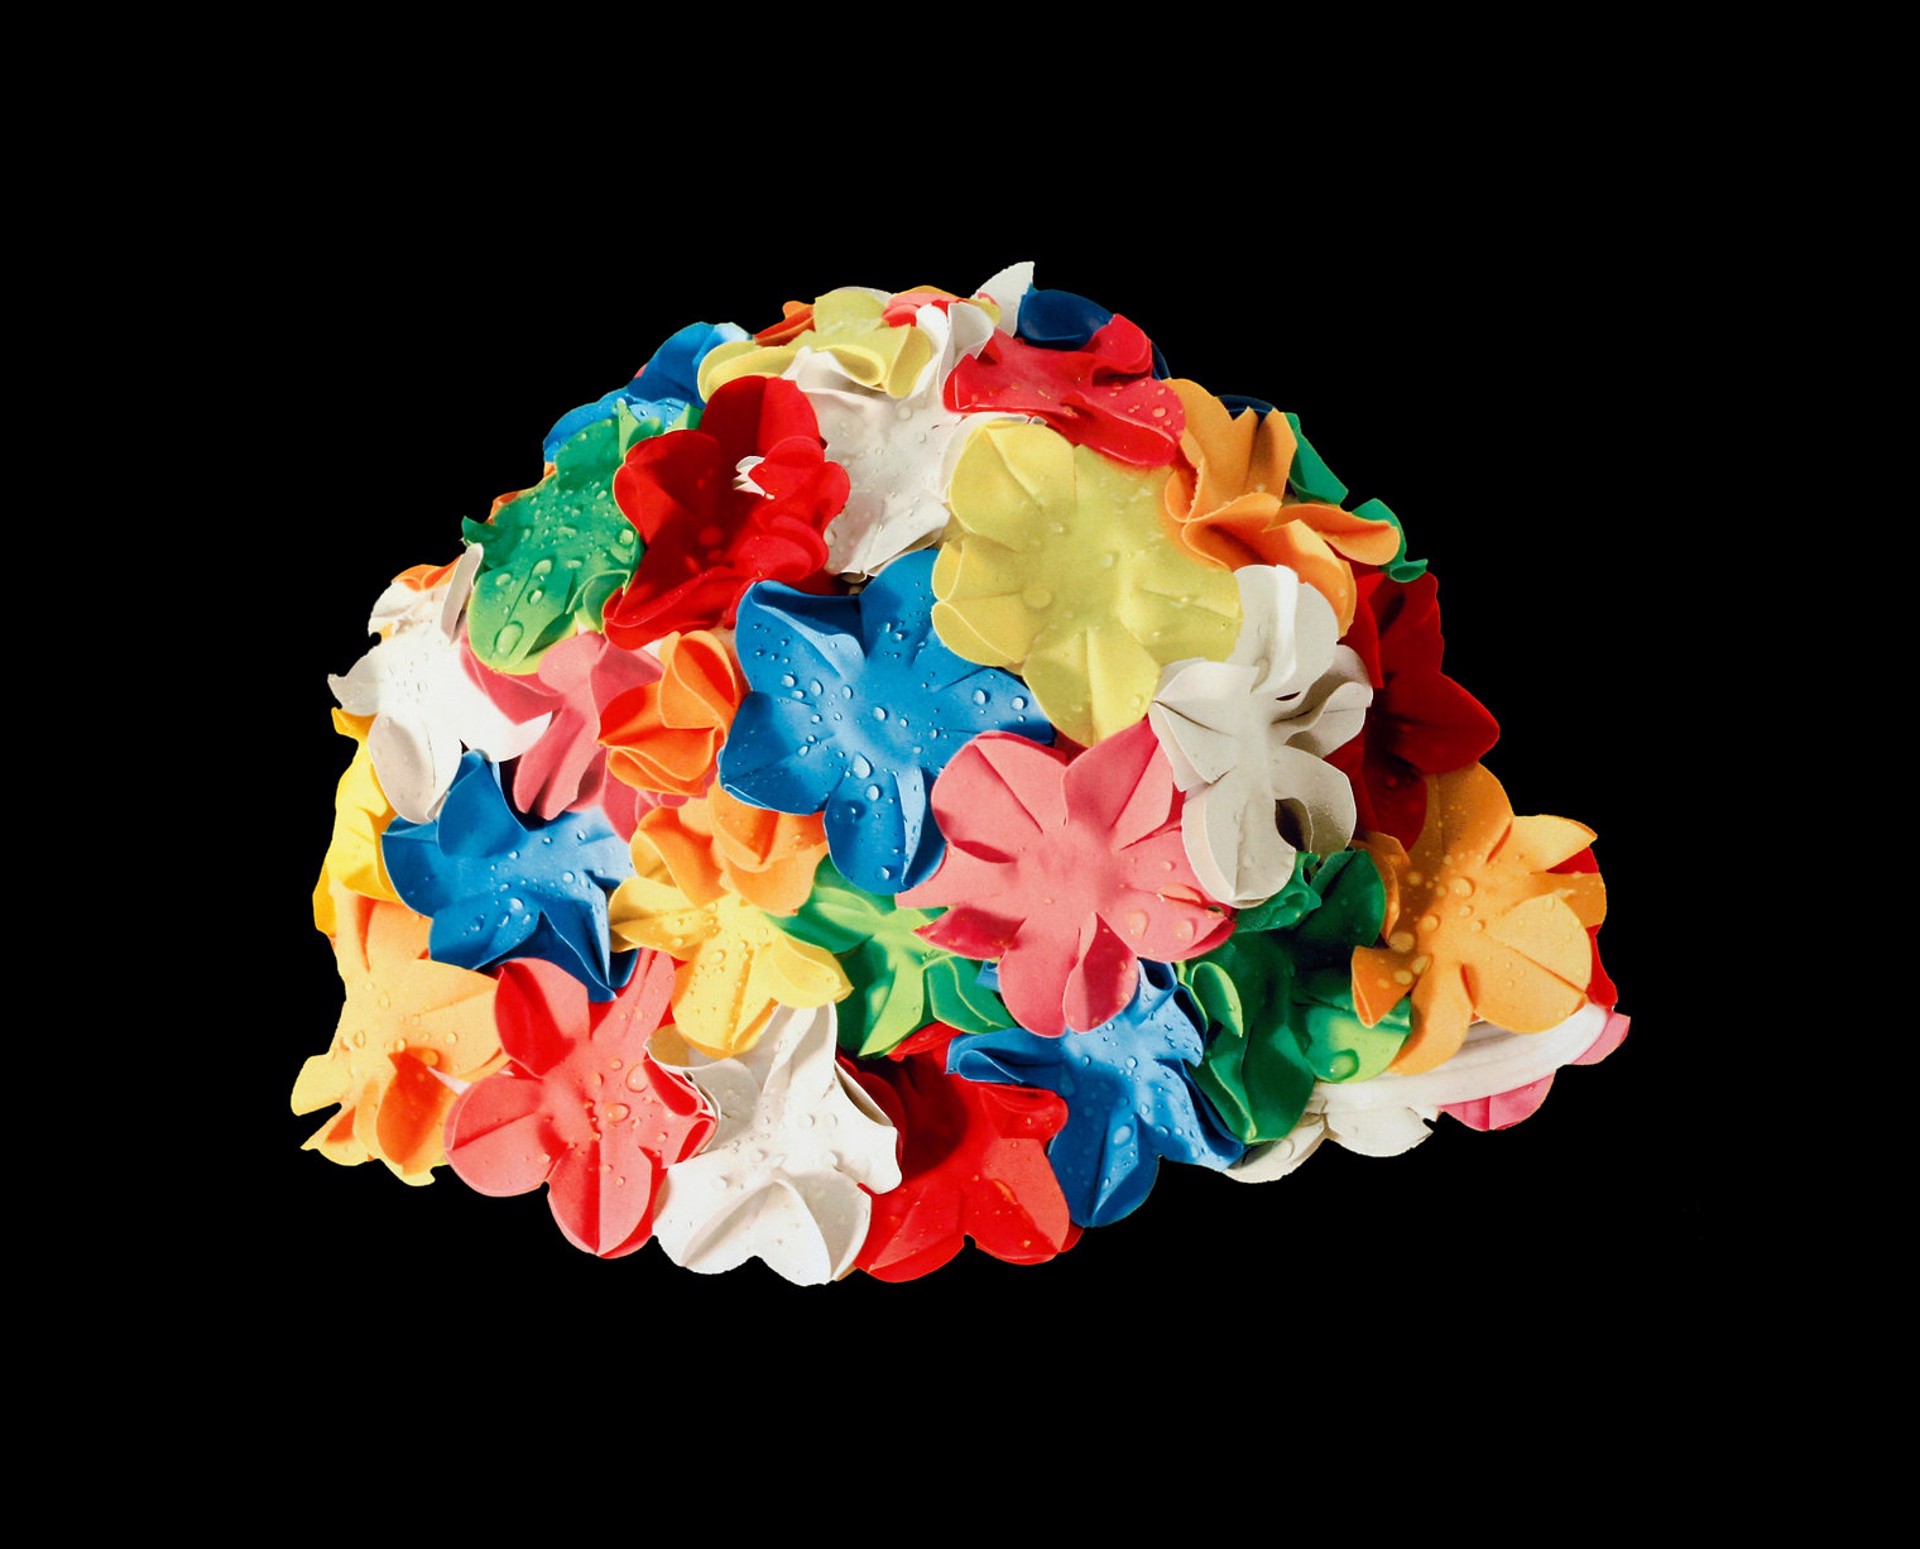 Multicolor Bathing Cap by Carole Feuerman